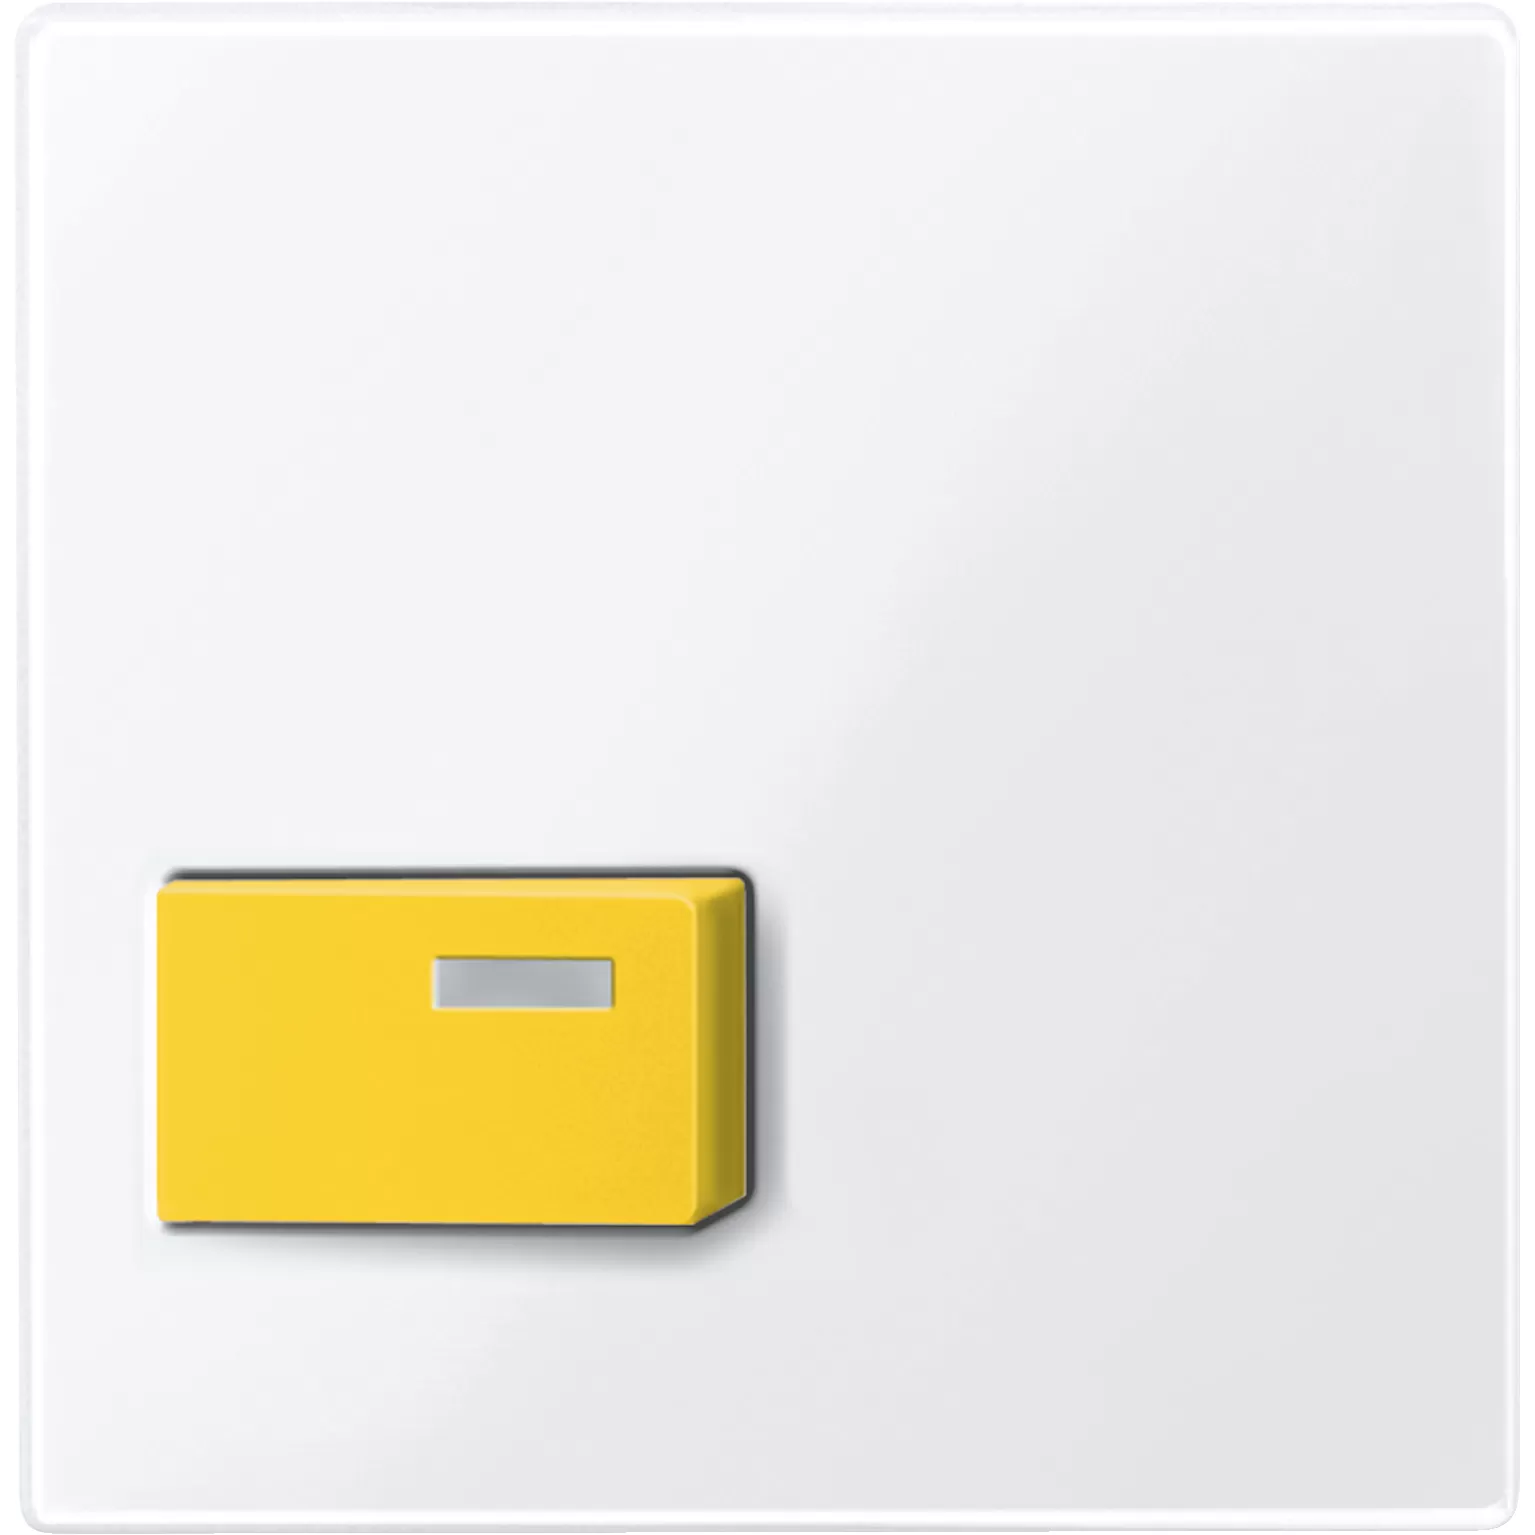 Merten Zentralplatte für Abstelltaster, gelb, aktivweiß glänzend, System M 451625